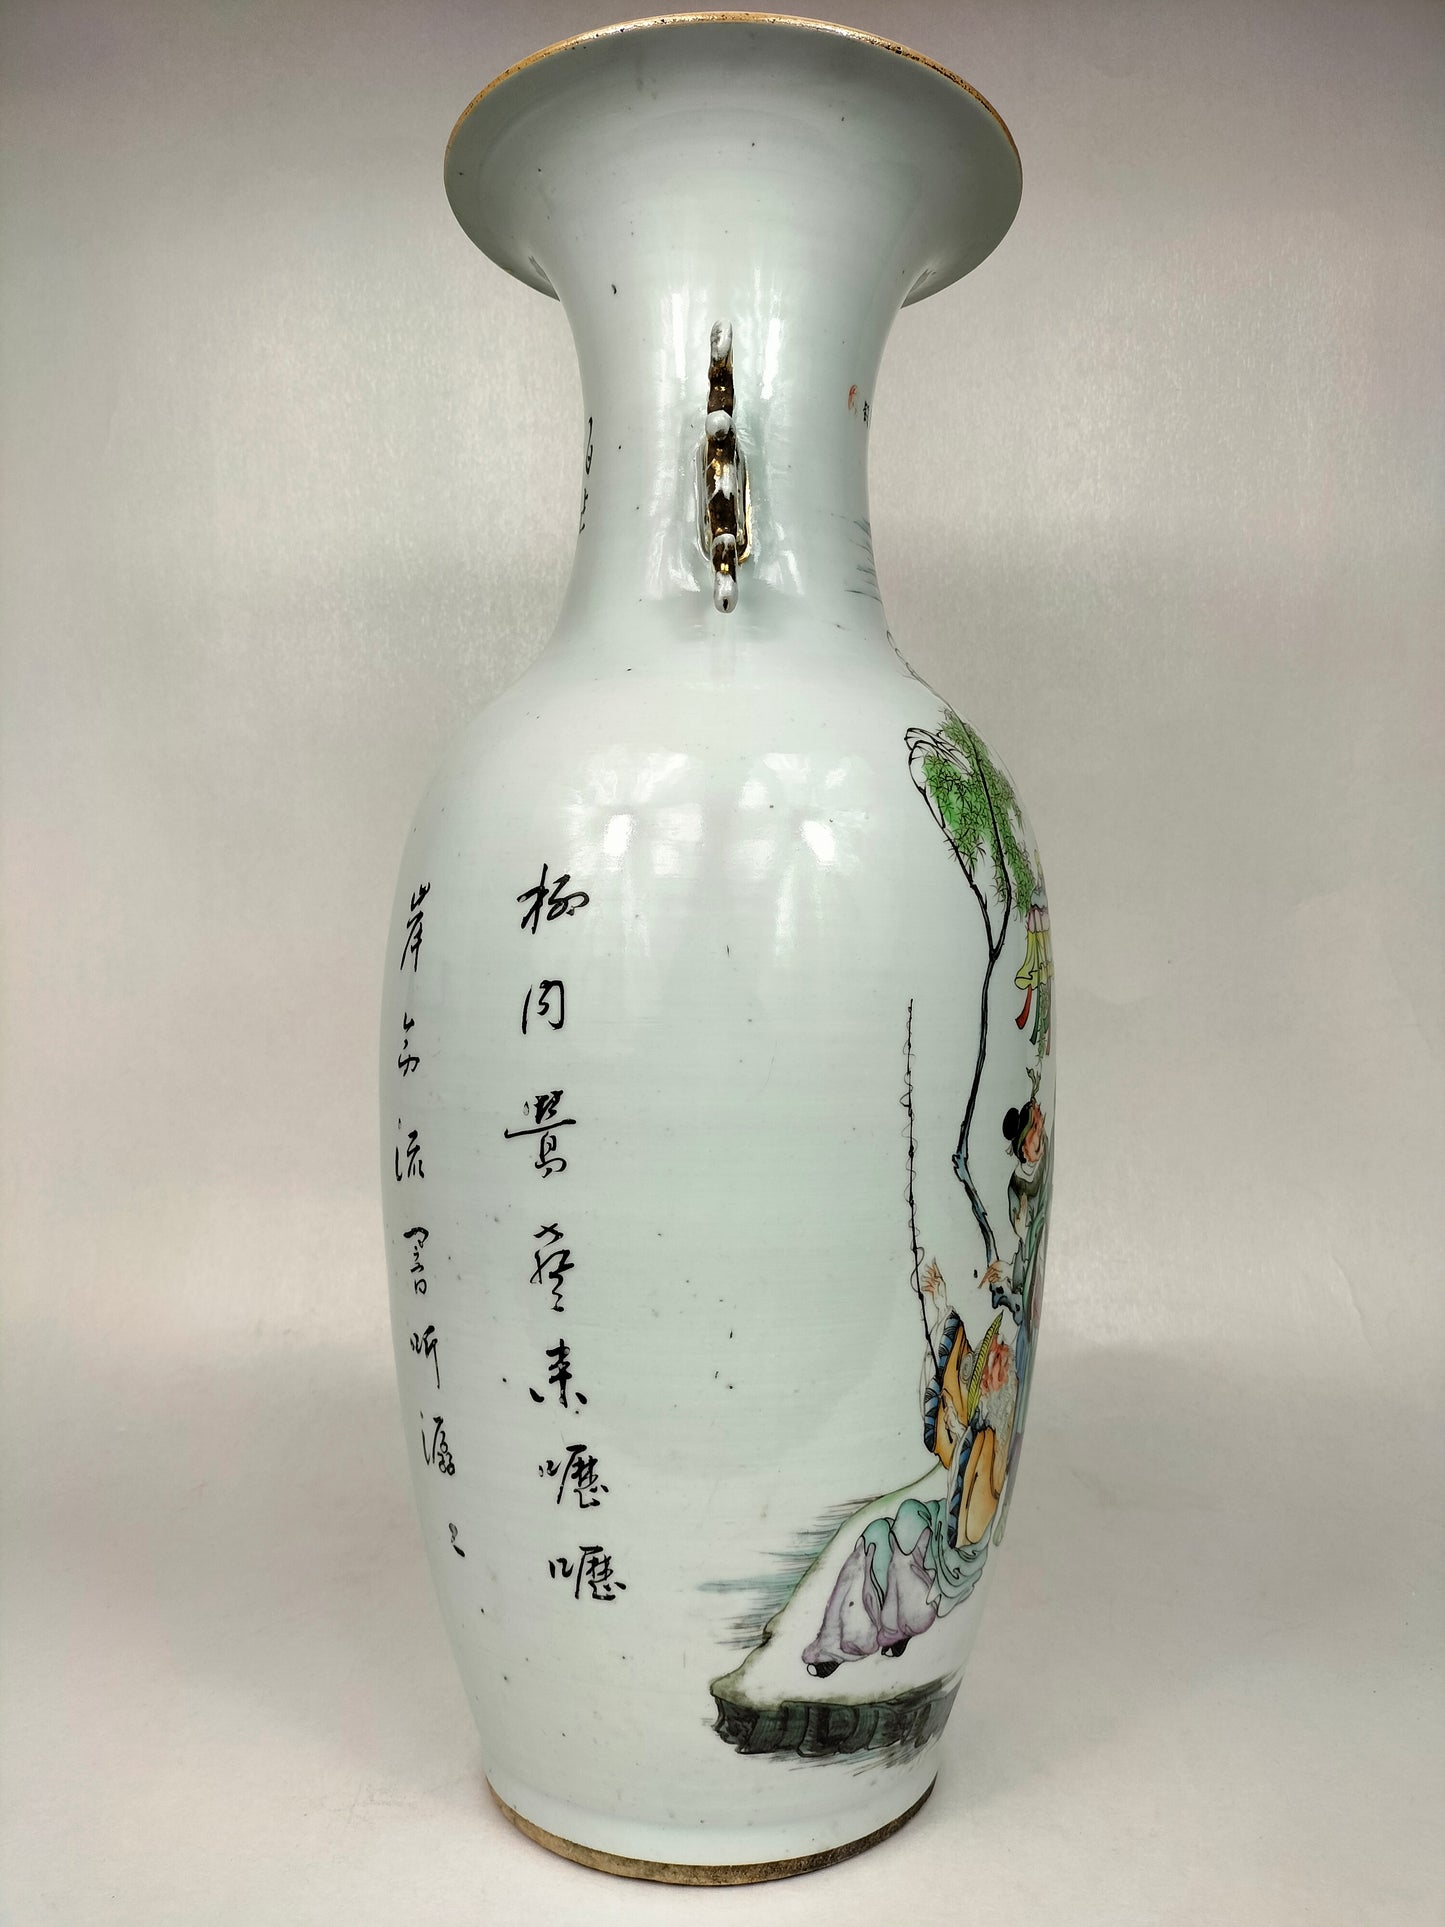 Grande vaso chinês antigo com cena imperial // Período da República (1912-1949)